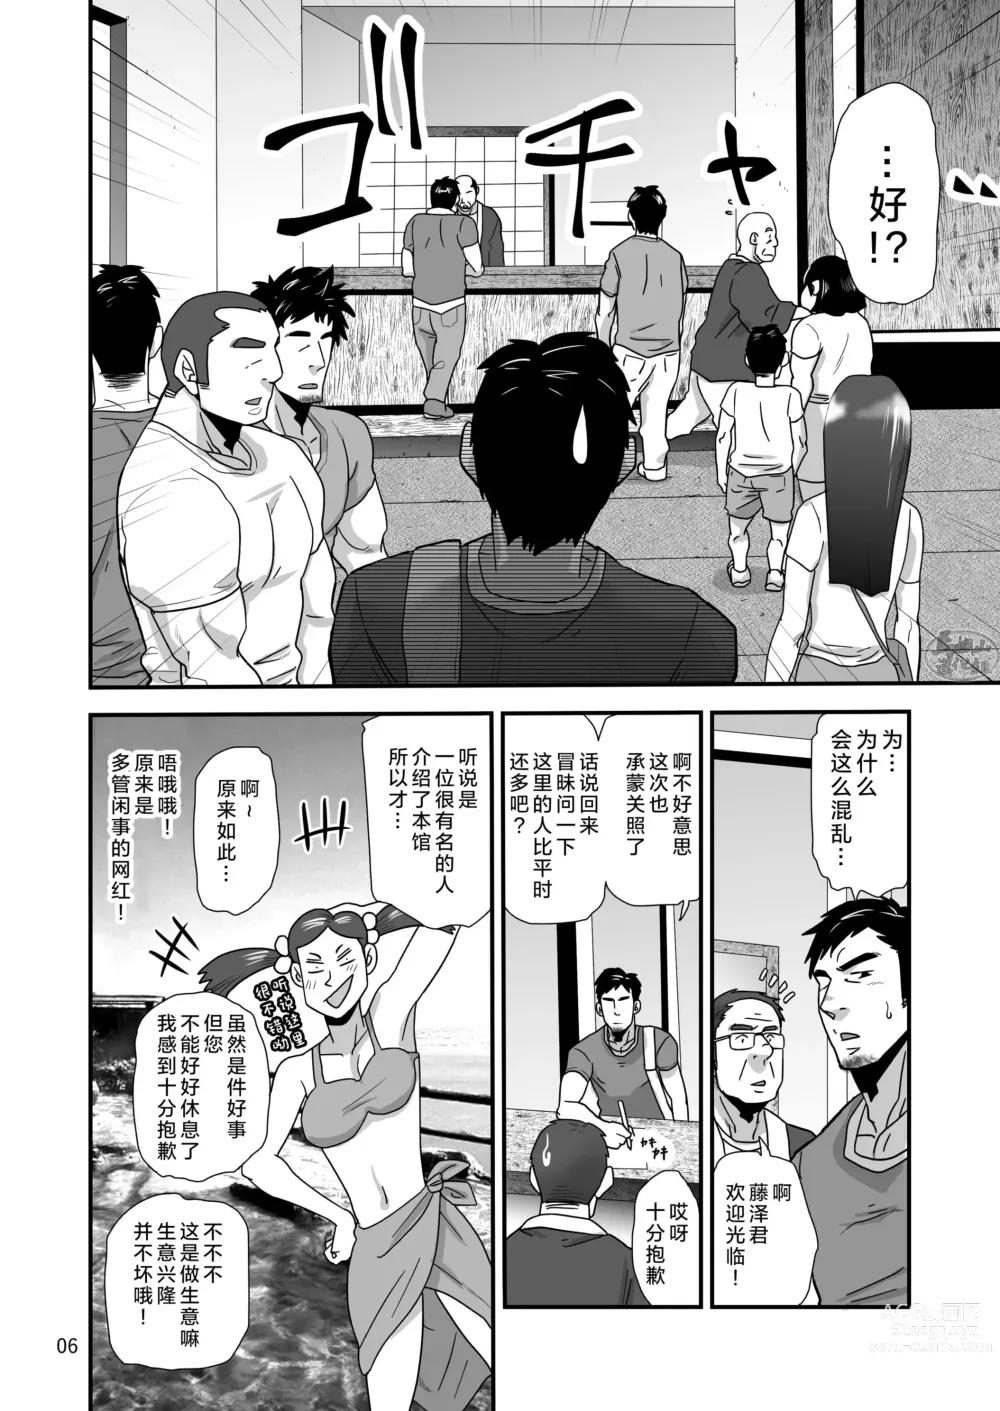 Page 6 of manga 松武互悦同衆!!_旅の恥はヌキすて